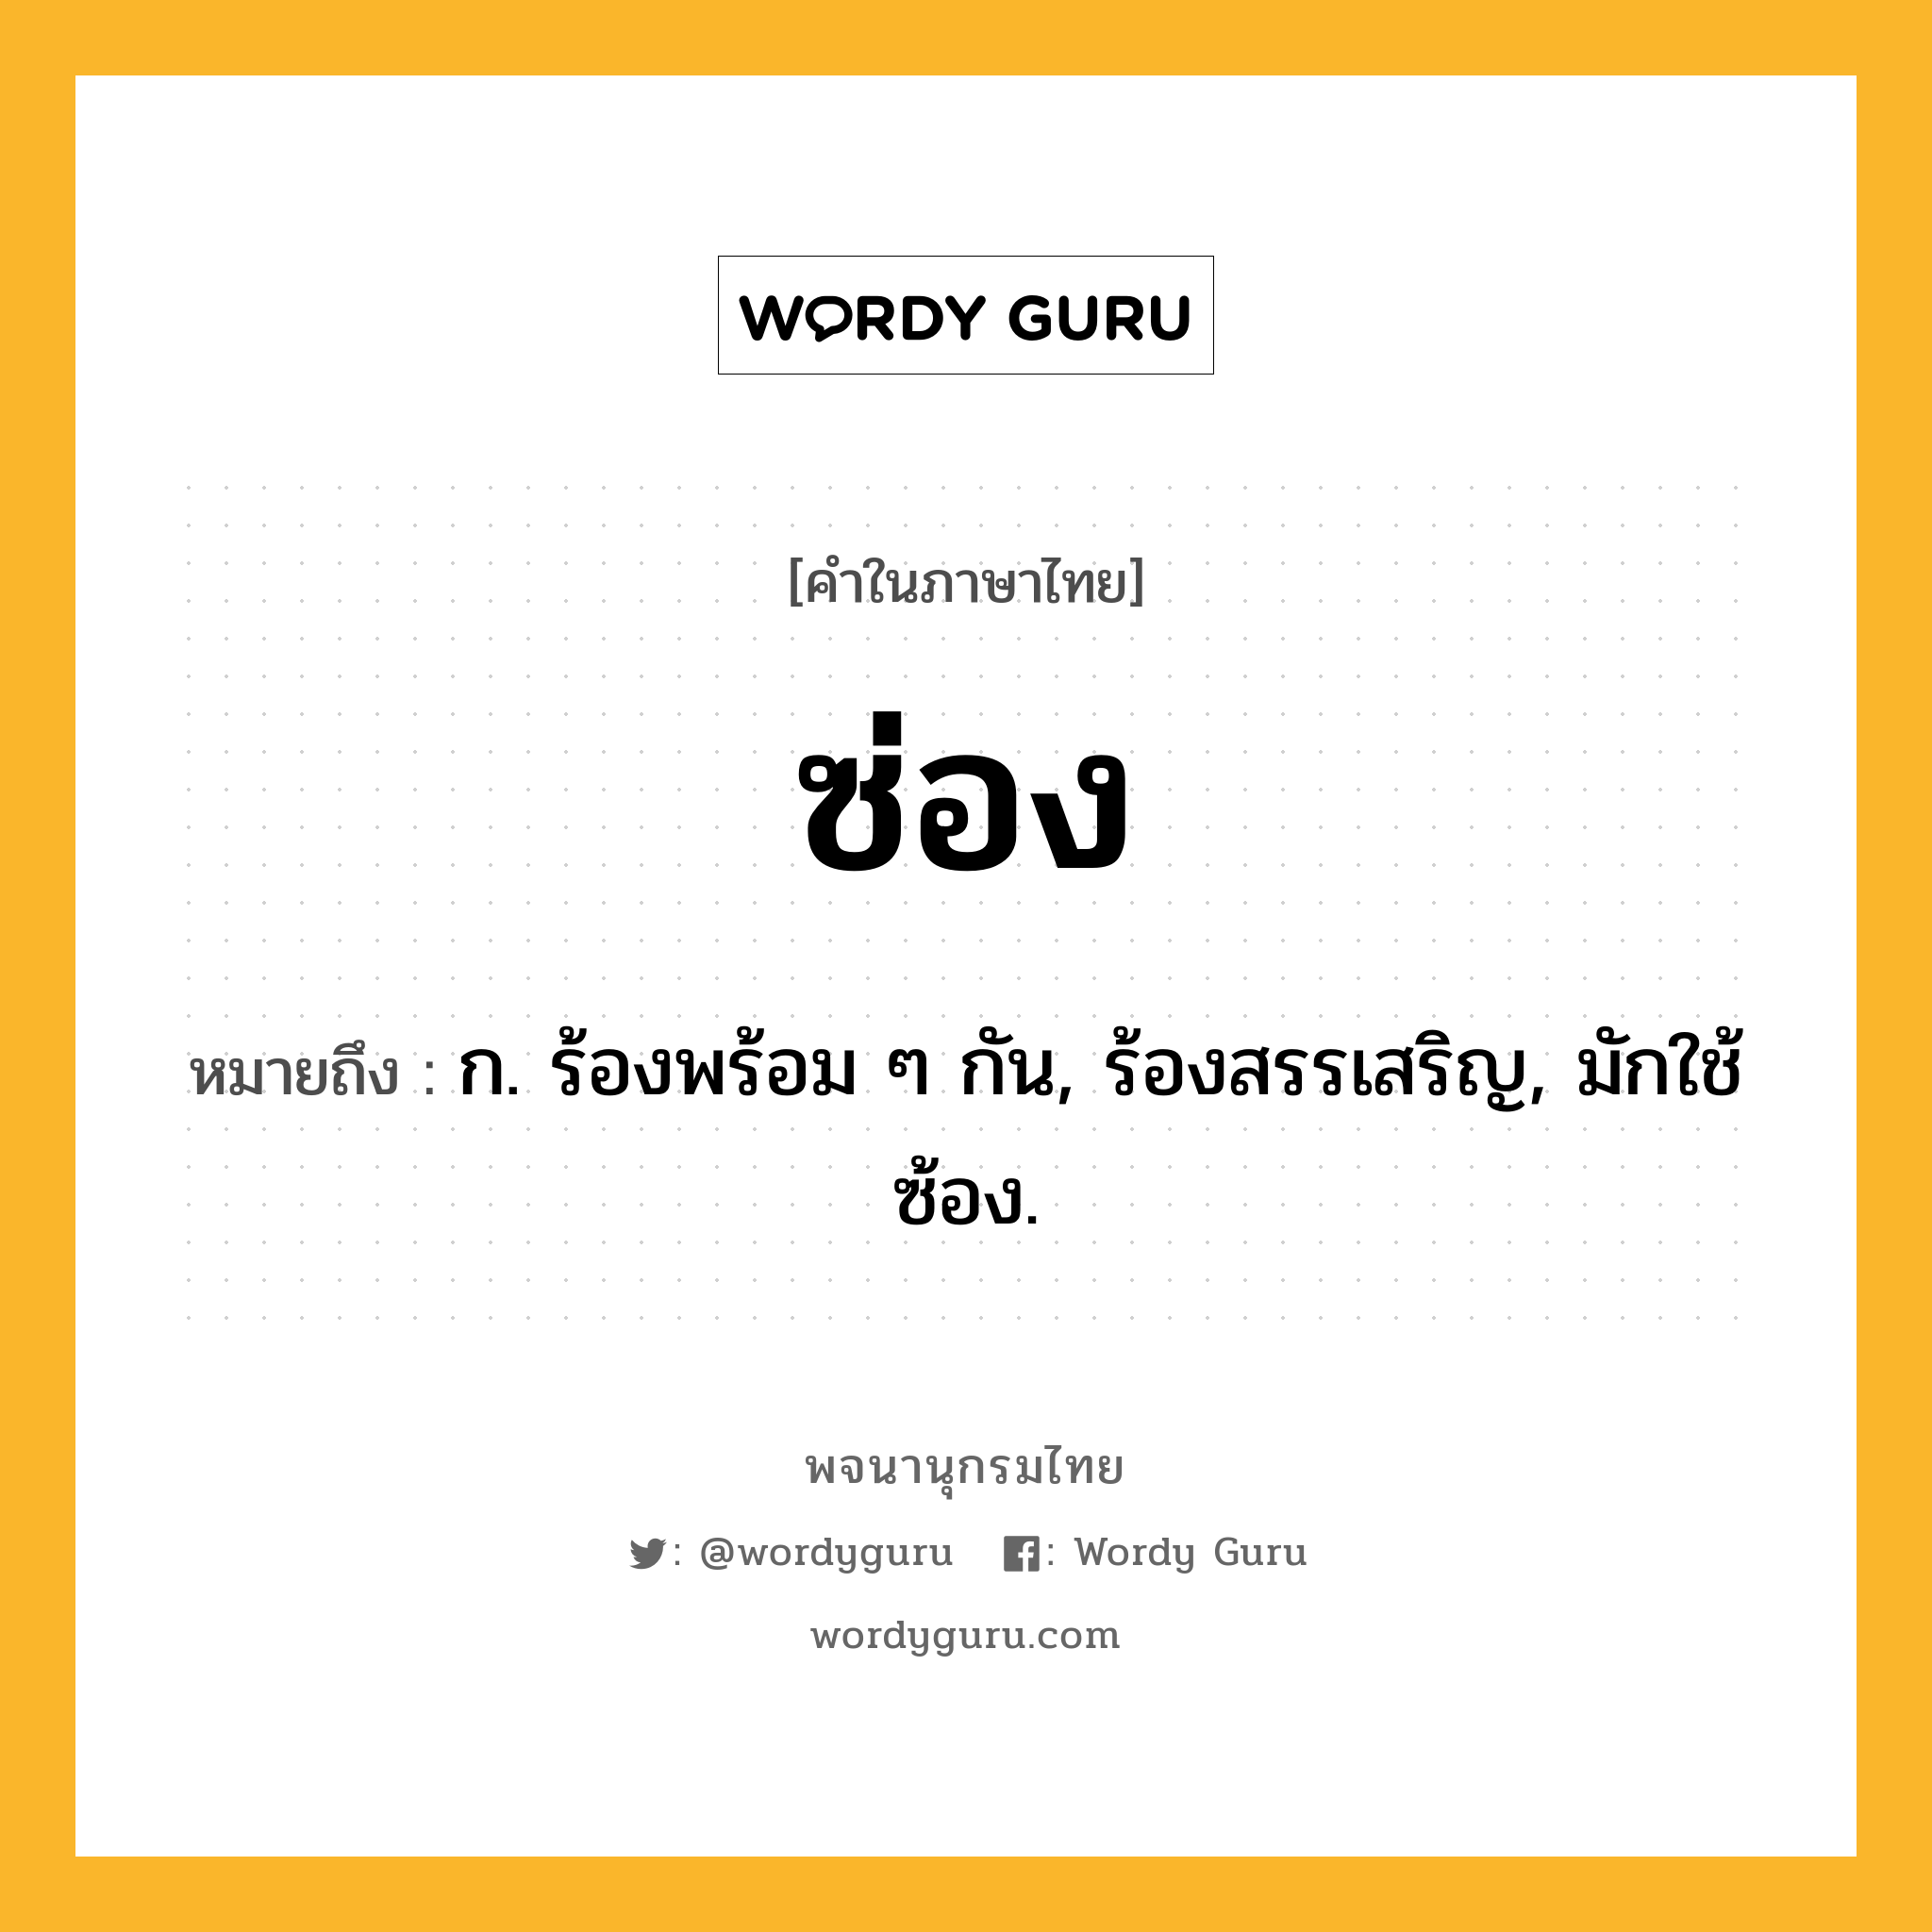 ซ่อง หมายถึงอะไร?, คำในภาษาไทย ซ่อง หมายถึง ก. ร้องพร้อม ๆ กัน, ร้องสรรเสริญ, มักใช้ ซ้อง.